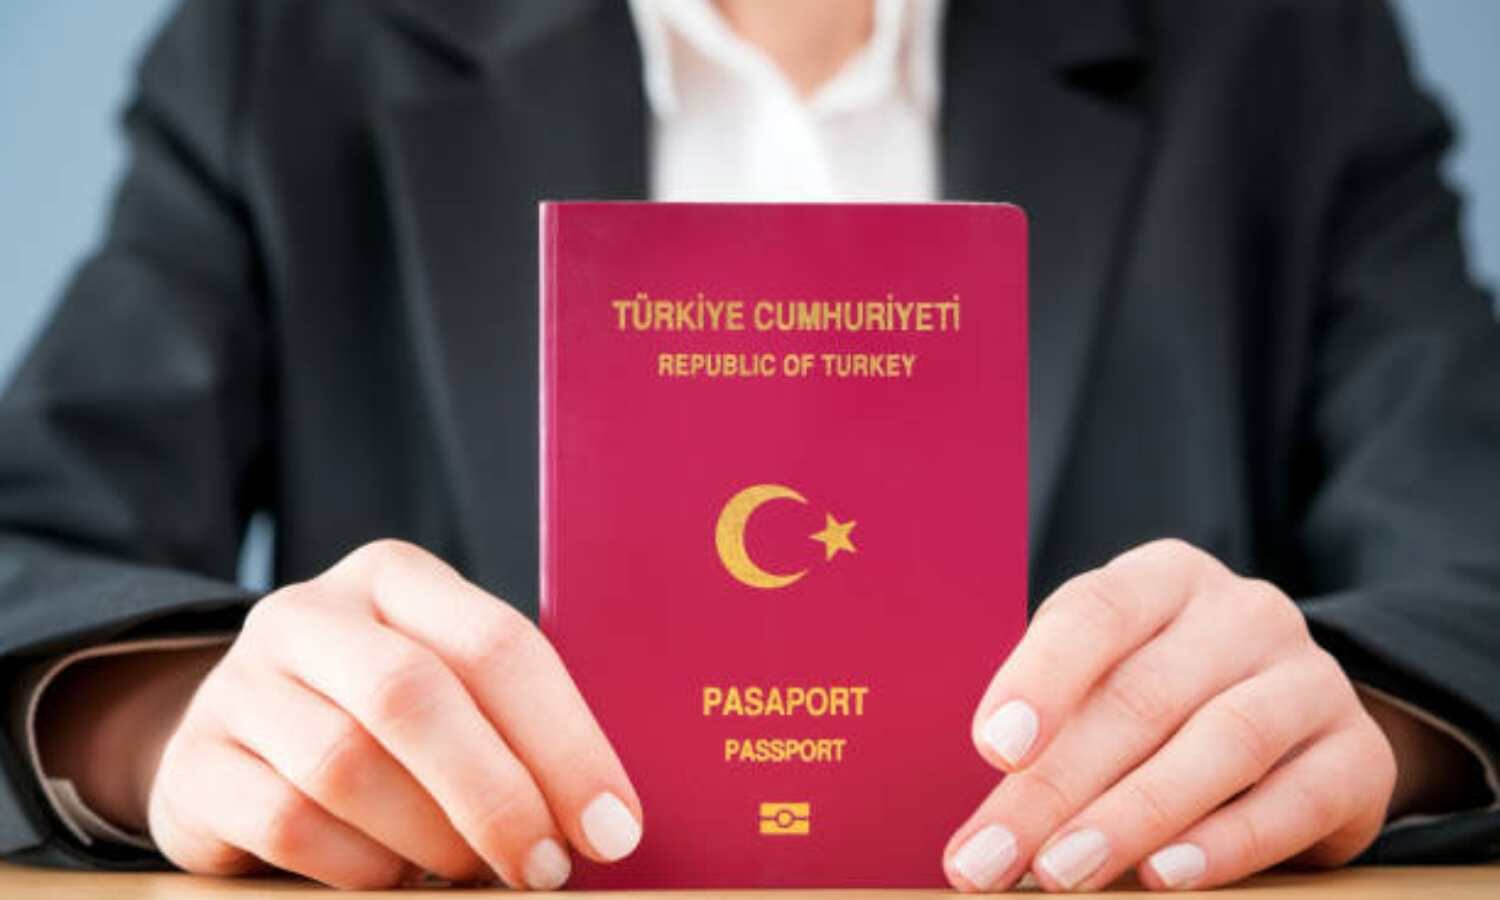 Existen muchas opciones para obtener la ciudadanía turca y el pasaporte correspondiente, siendo la más común, la inversión en bienes raíces. 